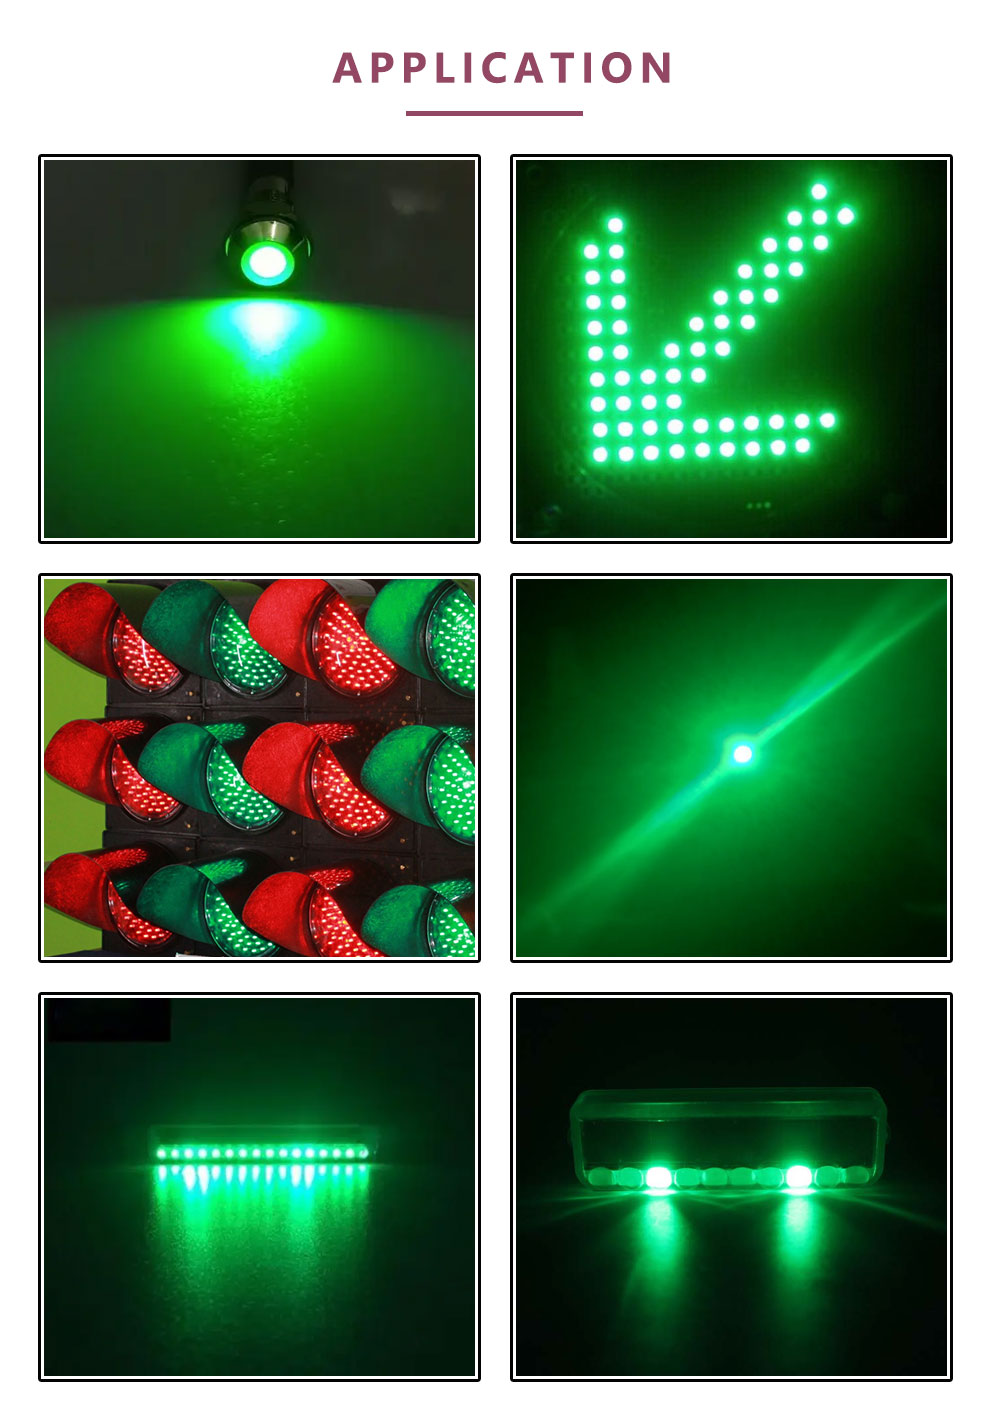 806LGC-E10IC Diffused Green Mini LED application